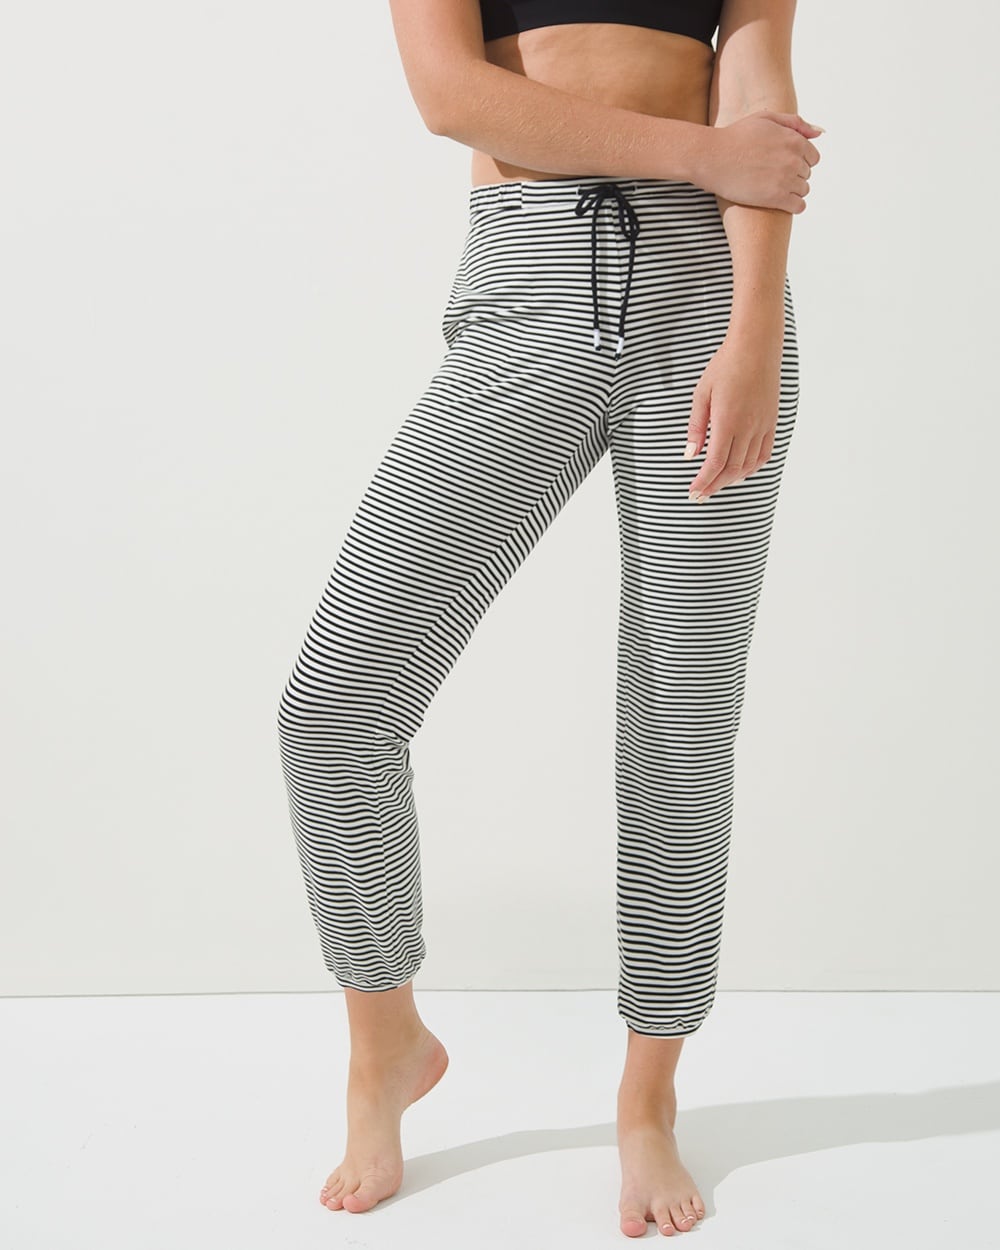 Cool Nights Banded Slim-Bottom Pajama Pants